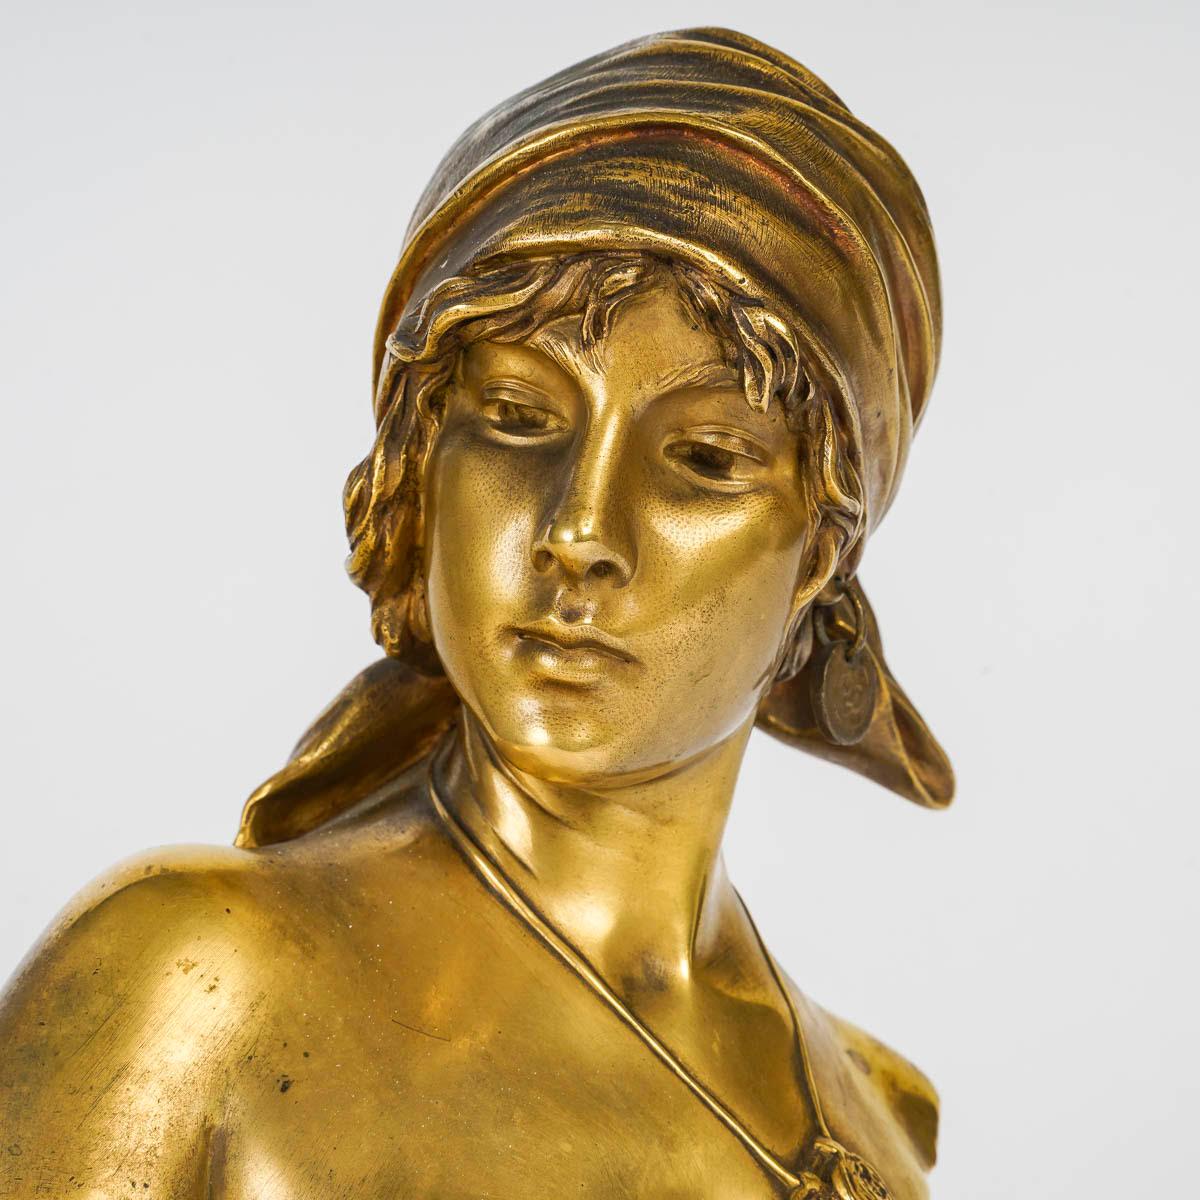 Vergoldete Bronzeskulptur von Emmanuel Villanis, Anfang 20. Jahrhundert.

Jugendstil-Skulptur um 1900 von Emmanuel Villanis, die die Büste einer jungen Frau, der Bohème, in vergoldeter Bronze darstellt.
H: 28cm, B: 17cm, T: 12cm